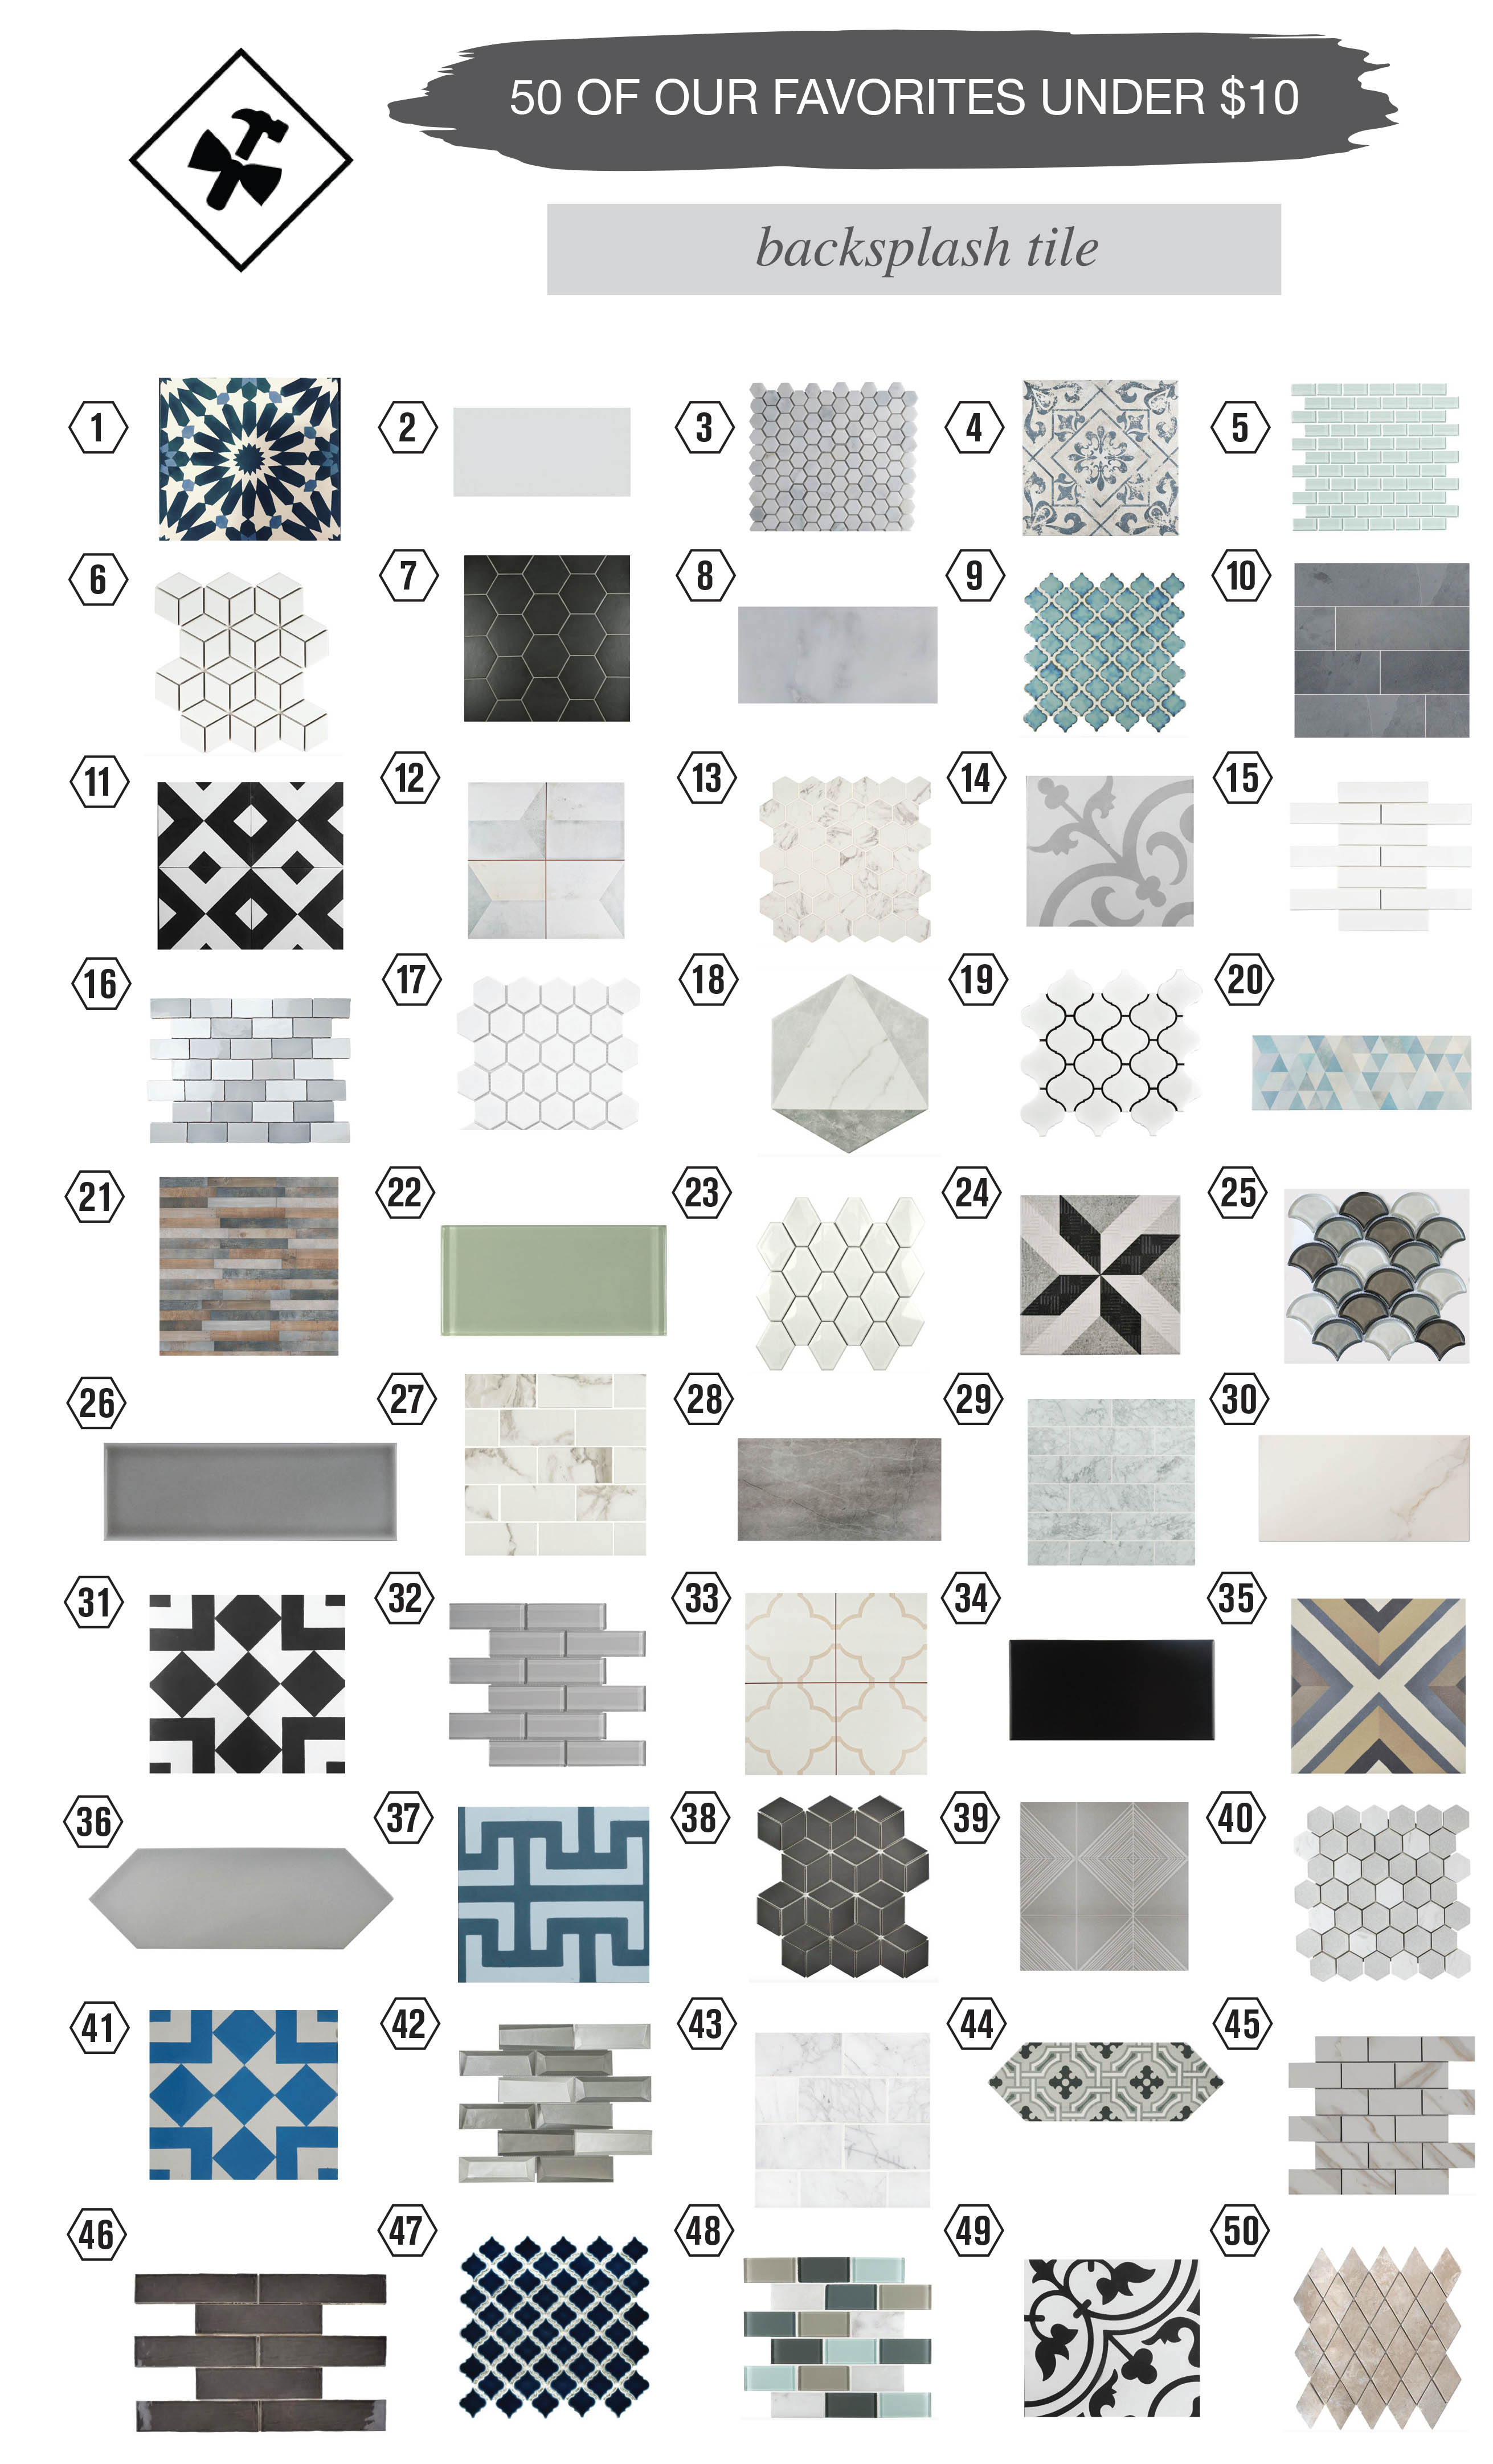 50 of our favorites under $10, backsplash tile